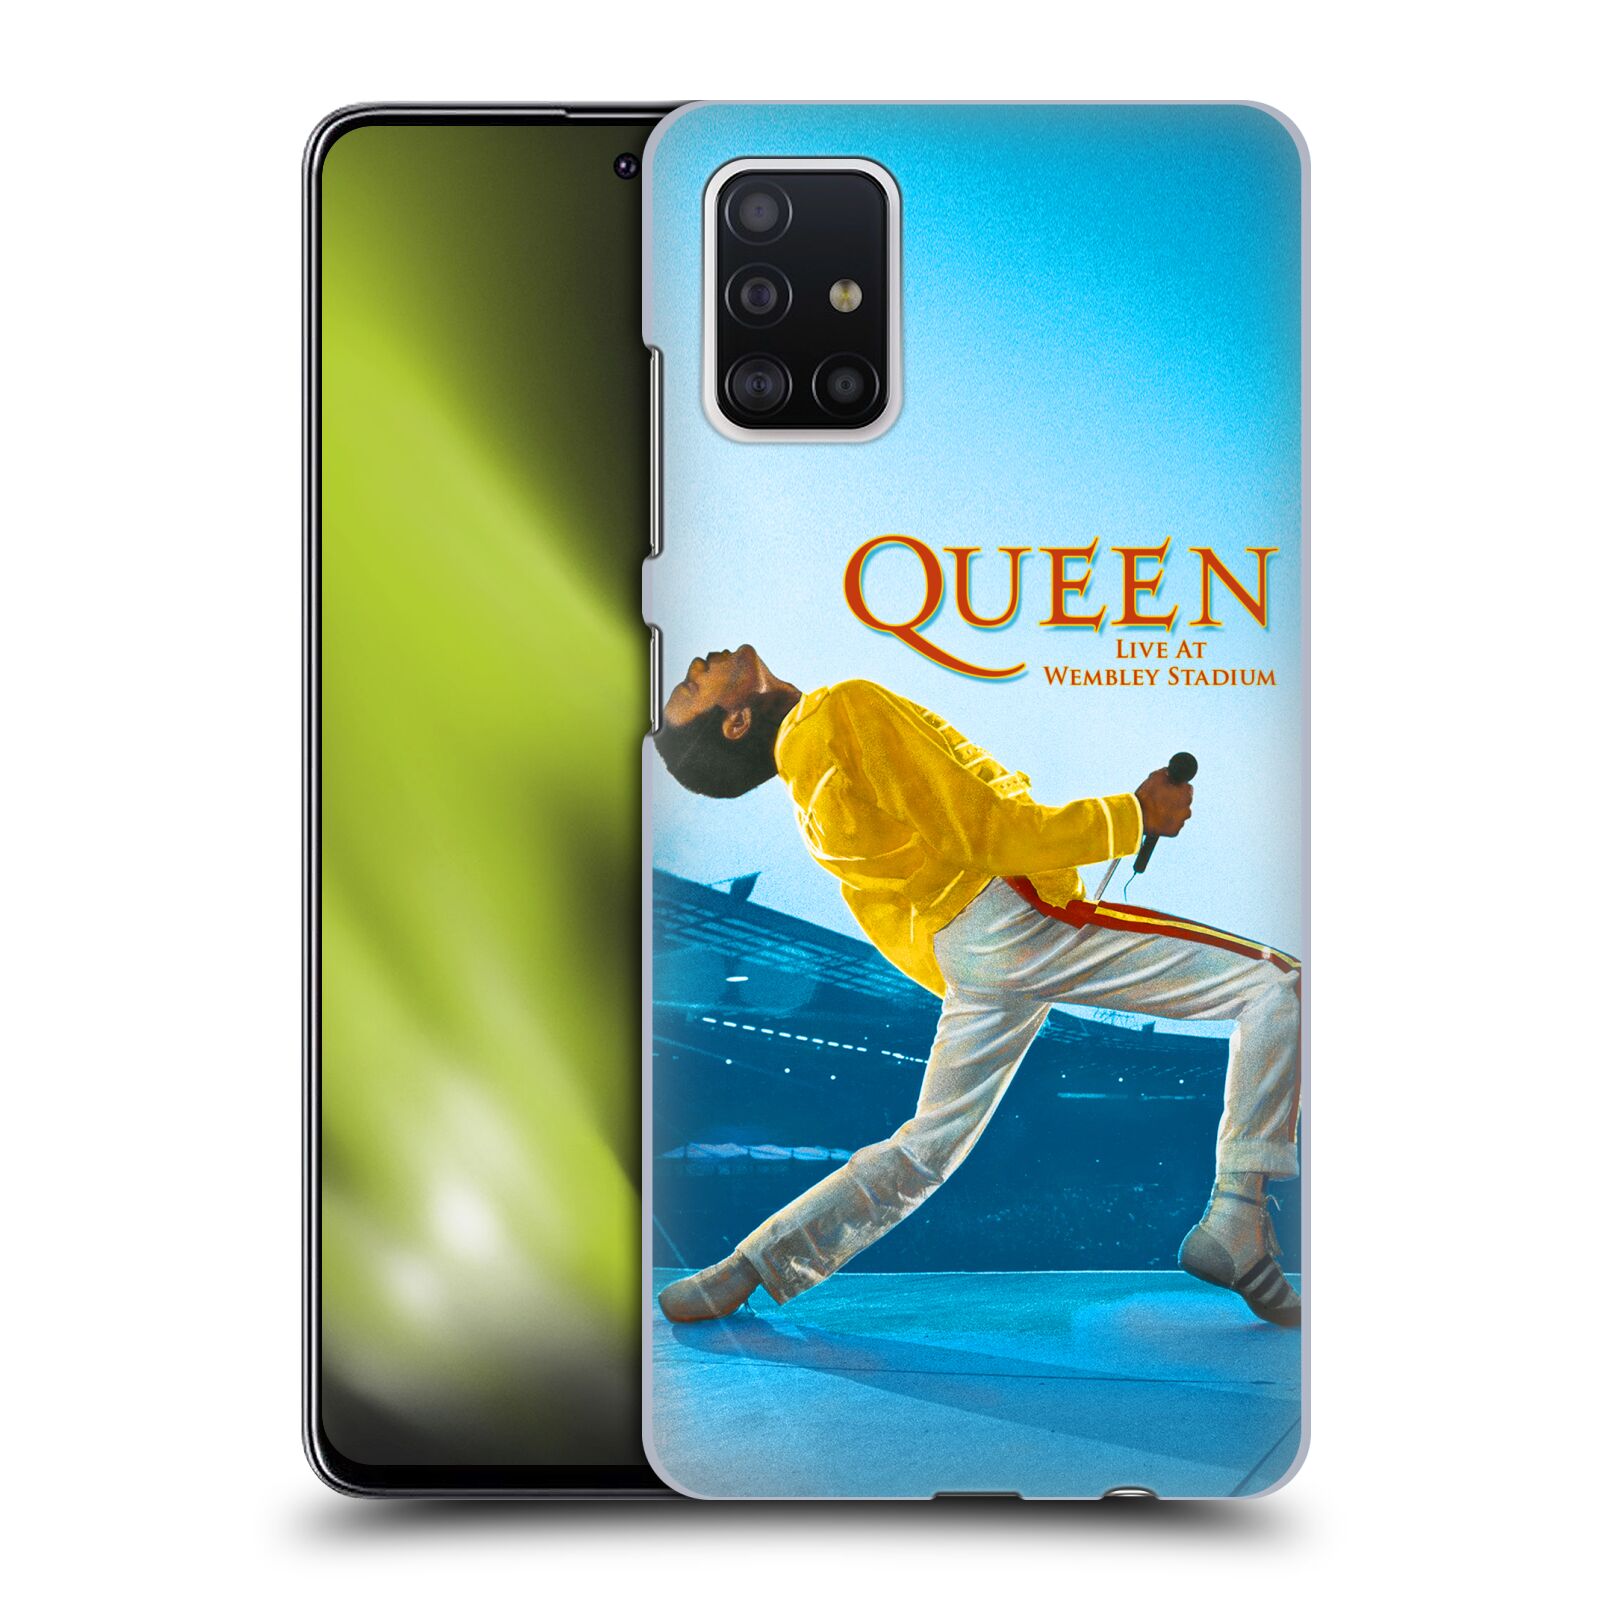 Pouzdro na mobil Samsung Galaxy A51 - HEAD CASE - zpěvák Queen skupina Freddie Mercury